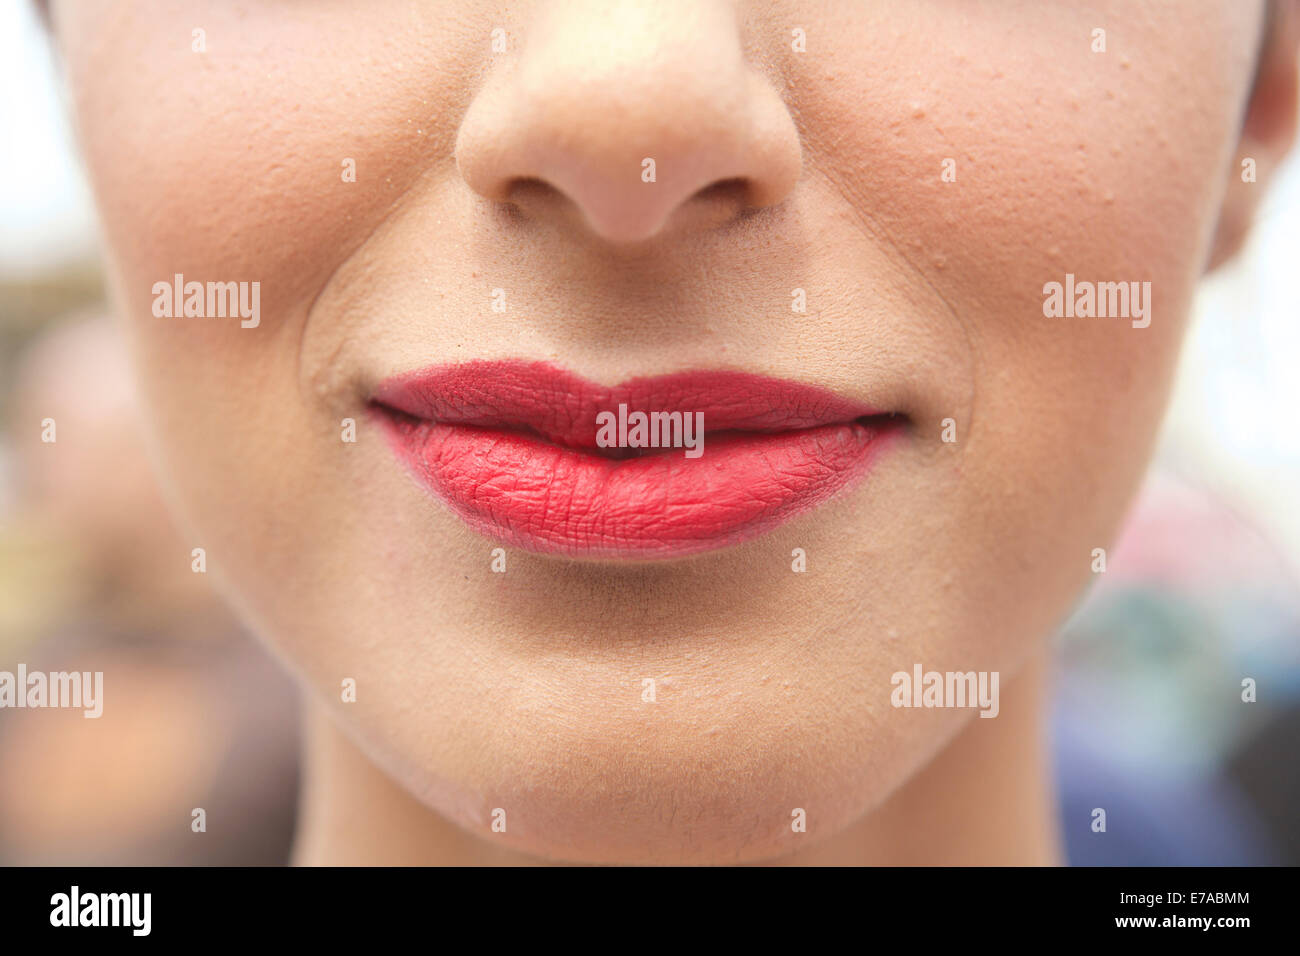 Labios rojos, mujeres jóvenes, de tez blanca, Londres, Inglaterra, Reino Unido. Mujer rostro labios rojos. Relleno de labios. Procedimiento cosmético. La cirugía estética de los labios. Foto de stock